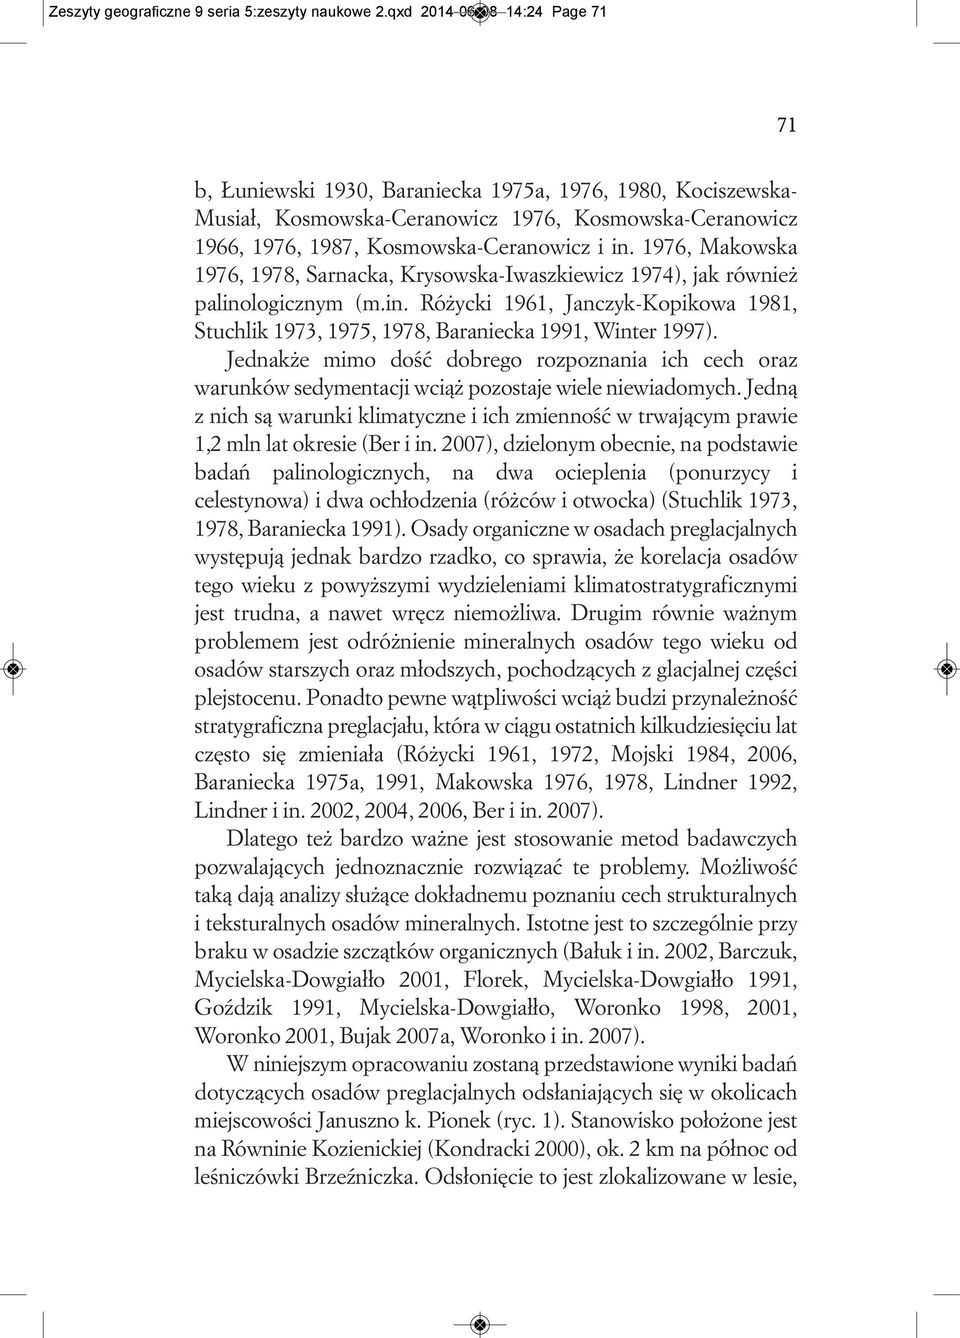 1976, Makowska 1976, 1978, Sarnacka, Krysowska-Iwaszkiewicz 1974), jak również palinologicznym (m.in. Różycki 1961, Janczyk-Kopikowa 1981, Stuchlik 1973, 1975, 1978, Baraniecka 1991, Winter 1997).